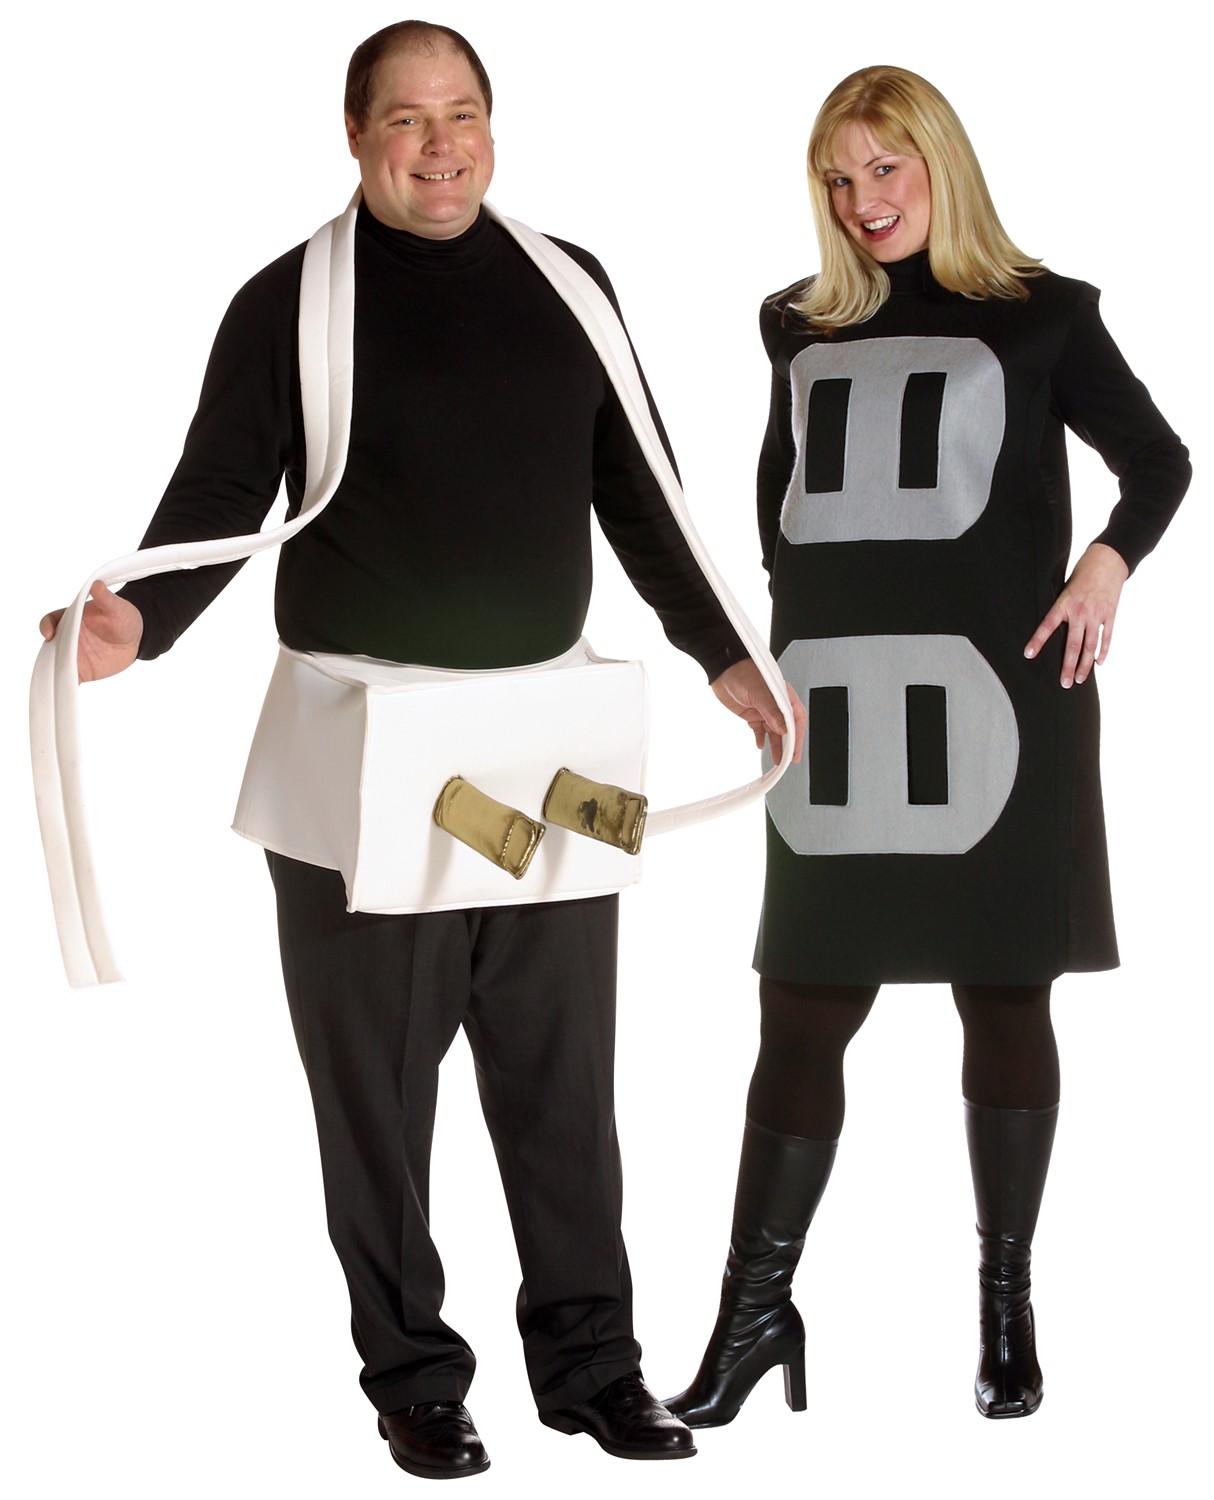 Plug & Socket Costume, Couples Costume